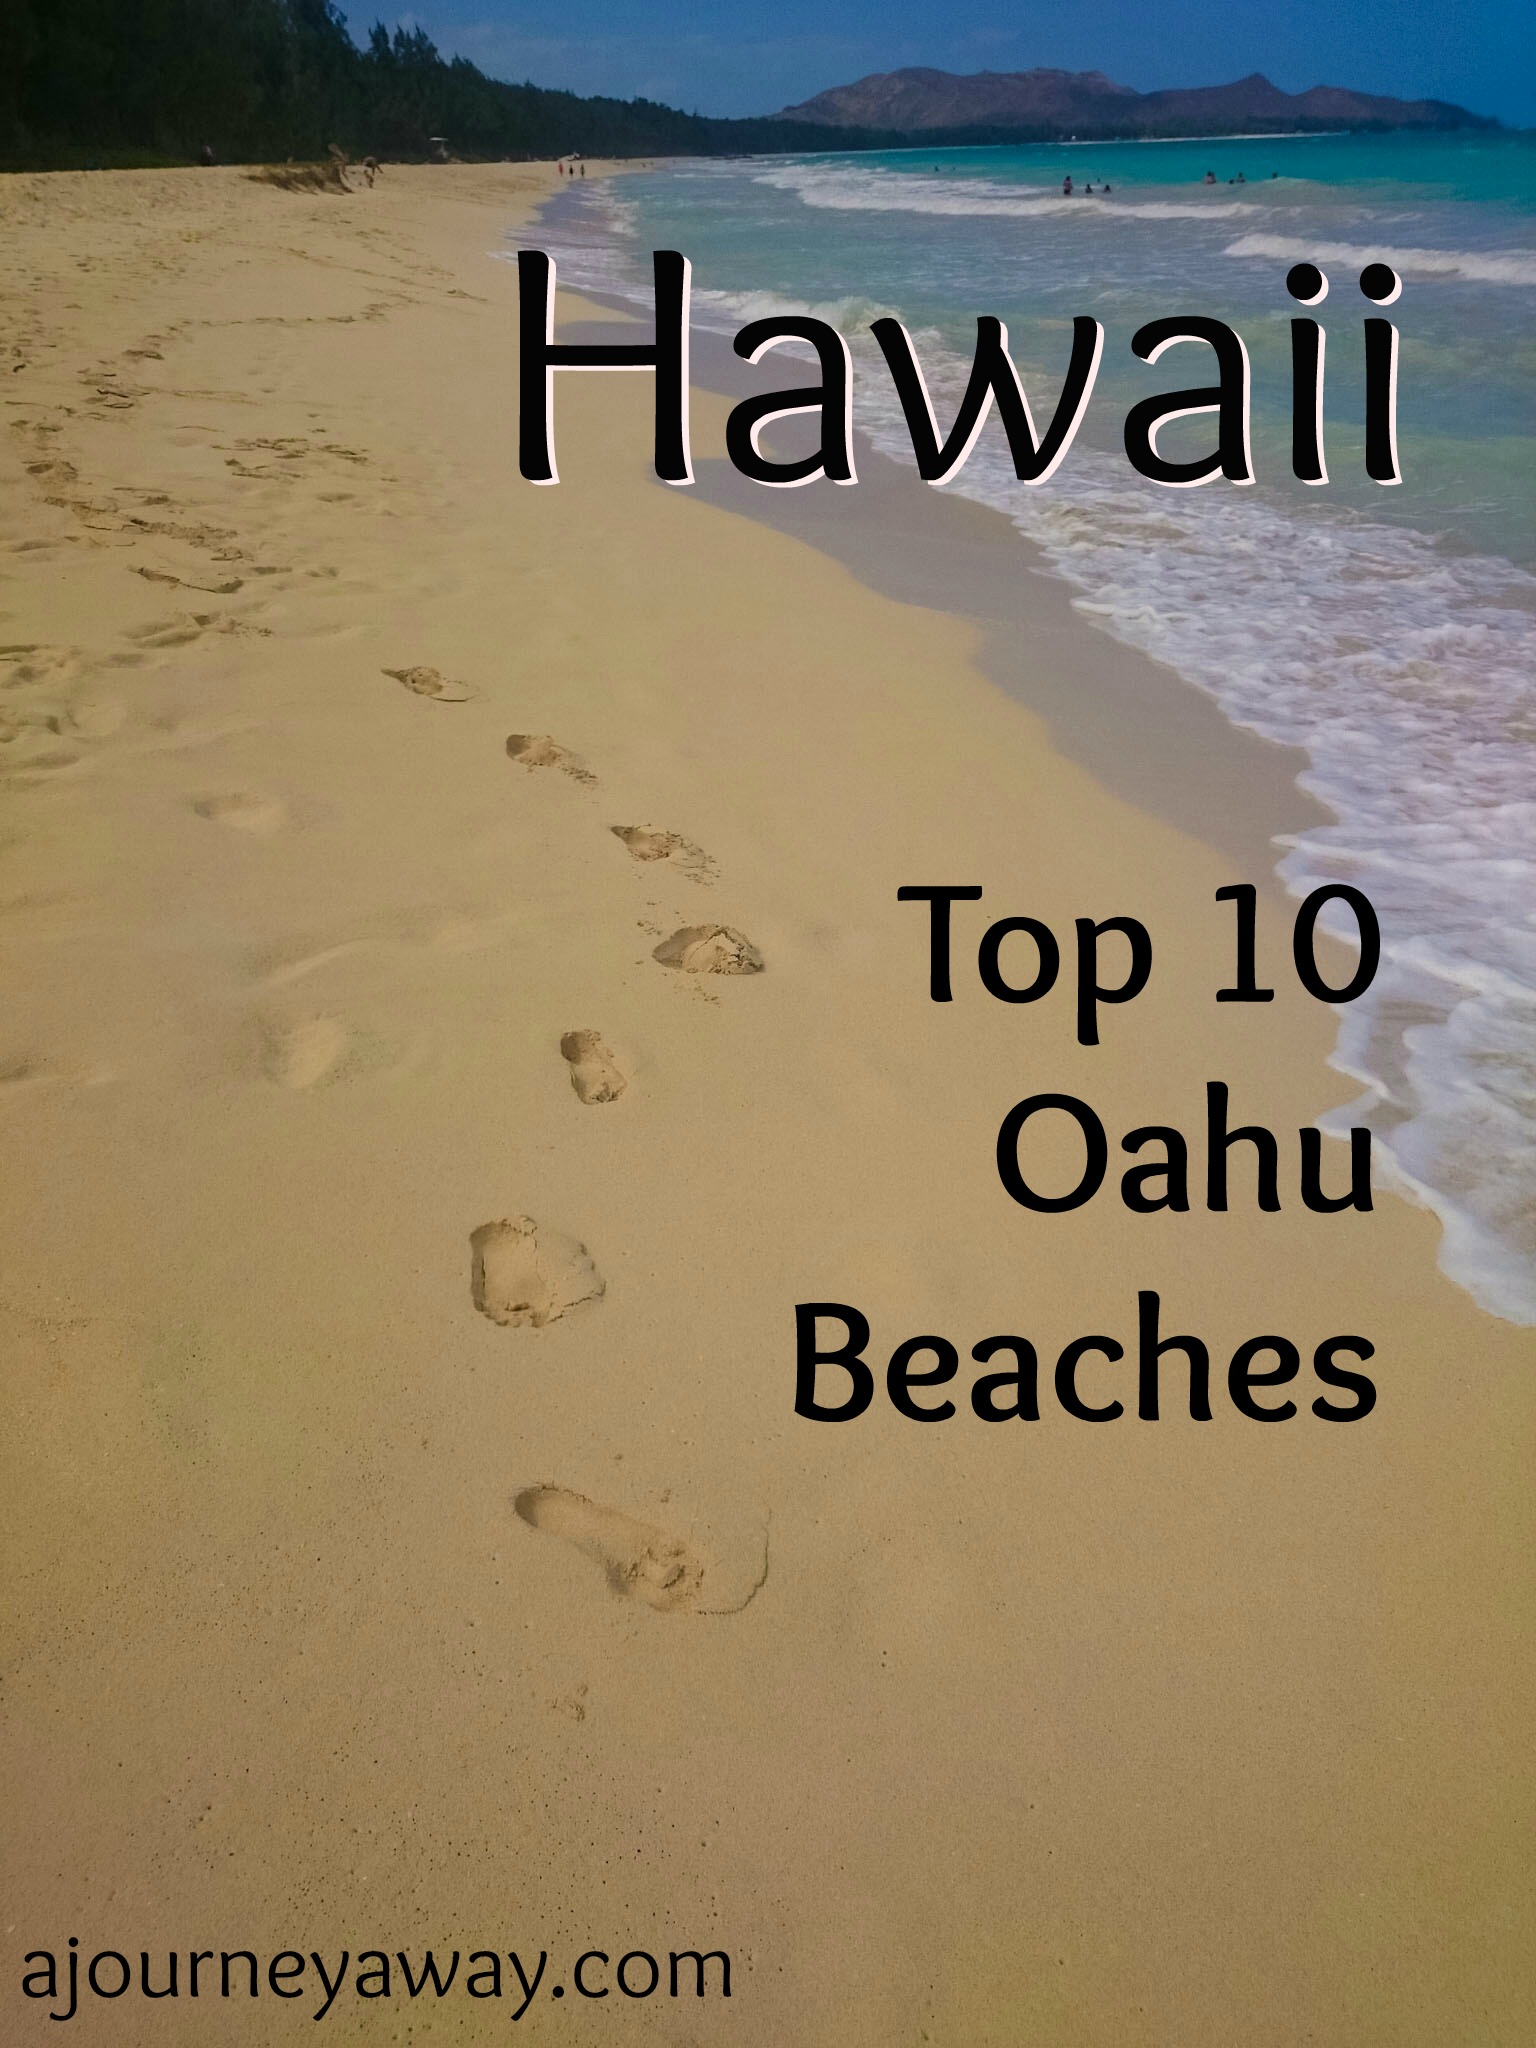 Top 10 Oahu Beaches